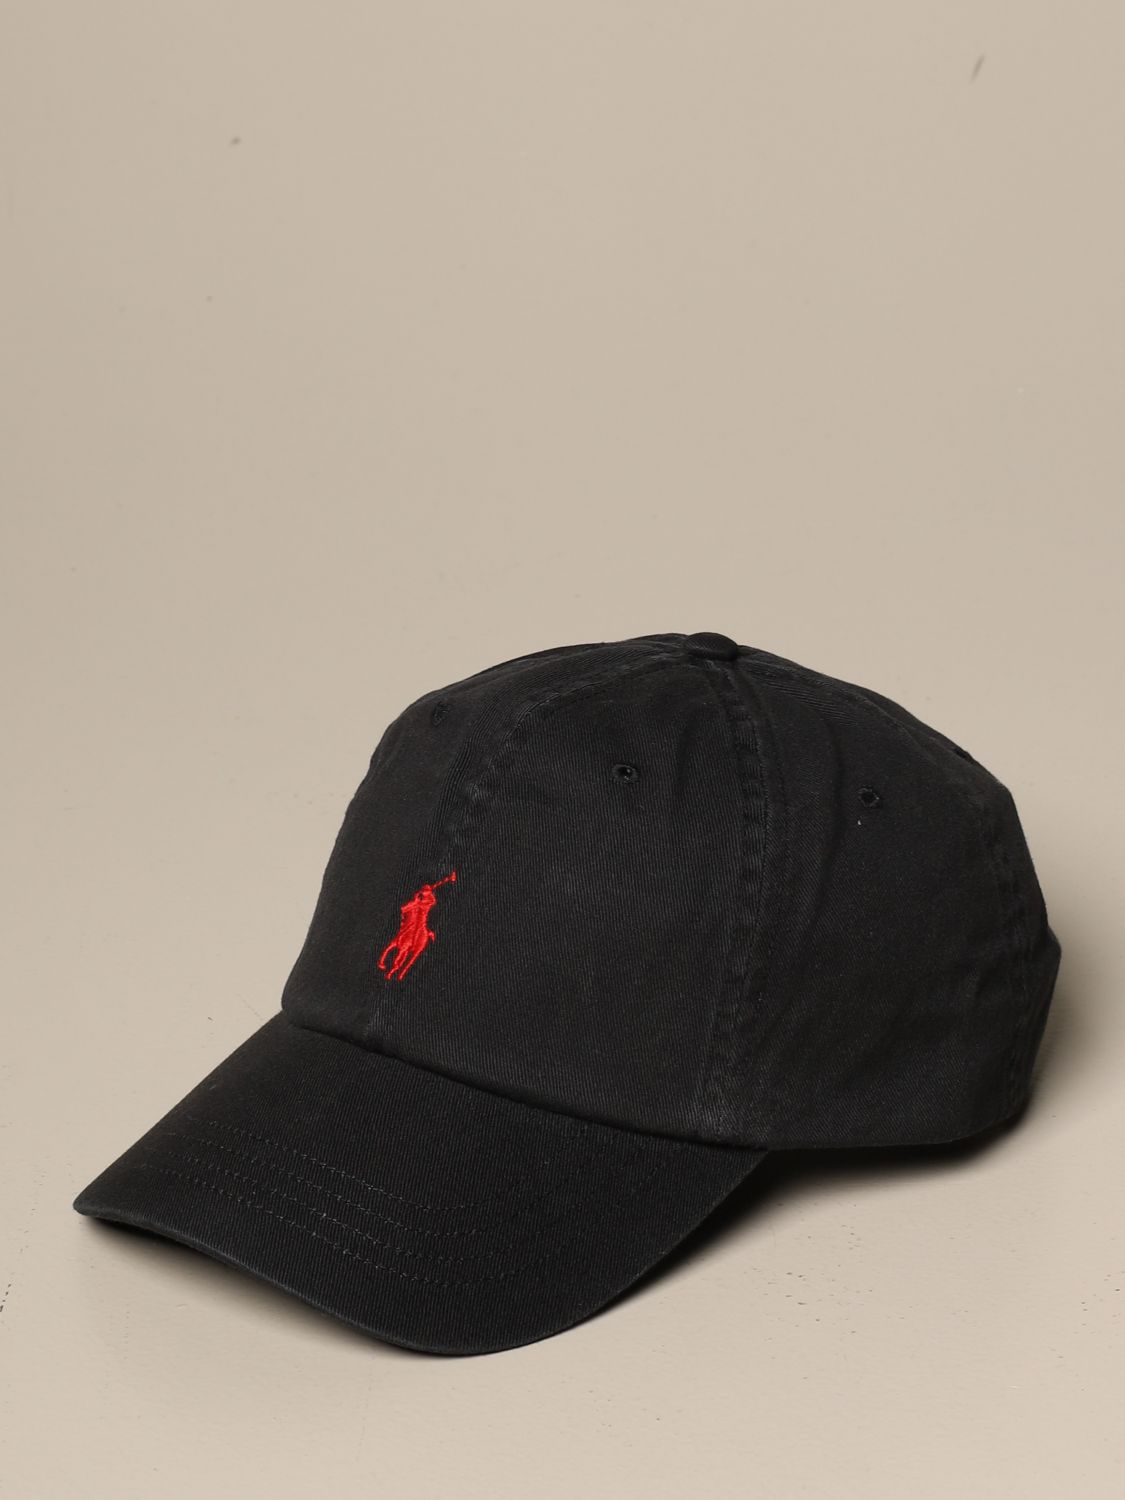 ralph lauren black cap